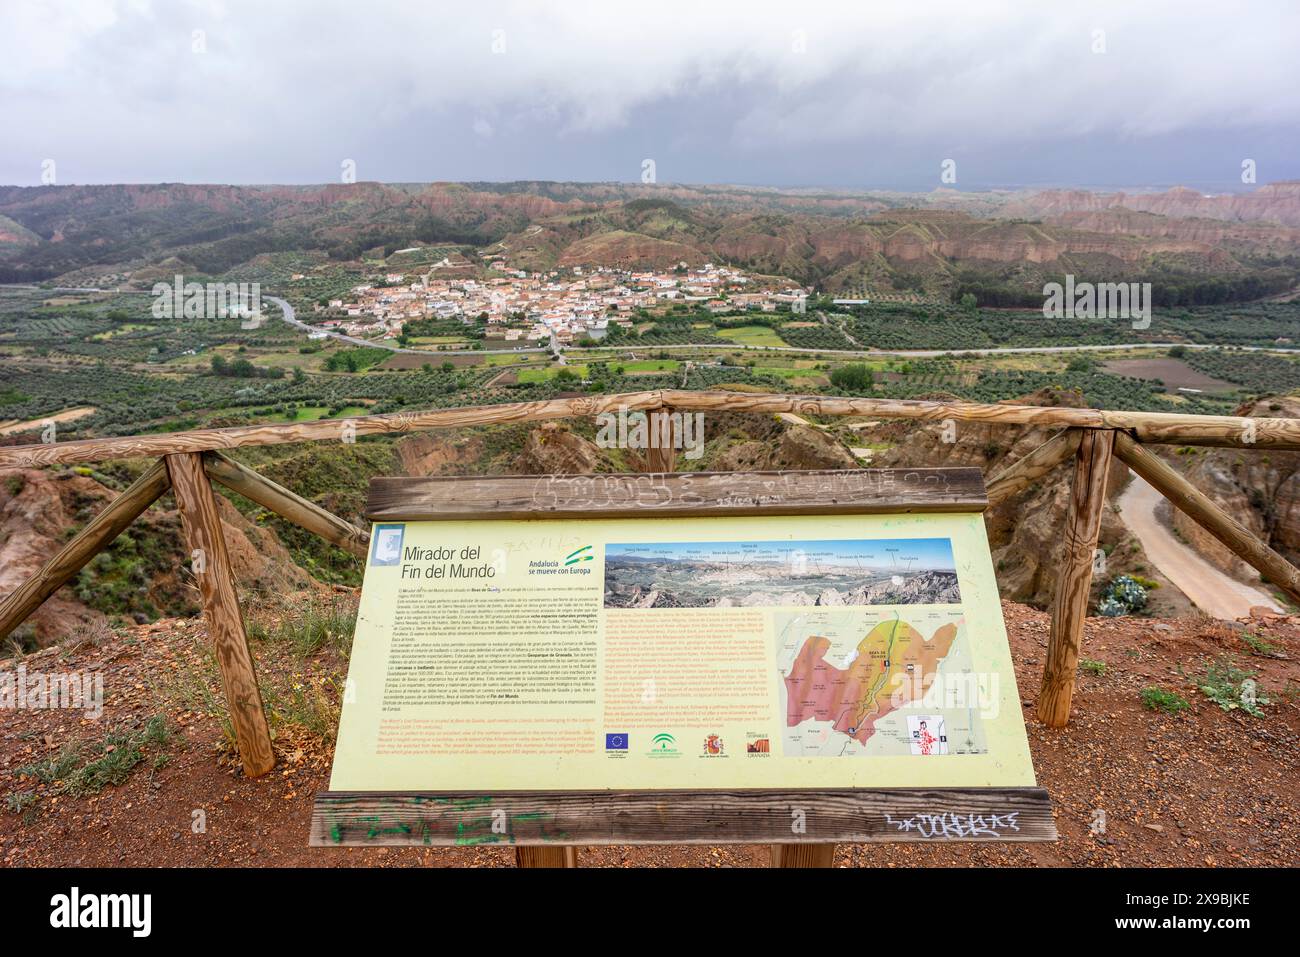 Viewpoint of the End of the World, 'Mirador del Fin del Mundo', Beas de Guadix, Granada Geopark, Granada province, Andalusia, Spain Stock Photo